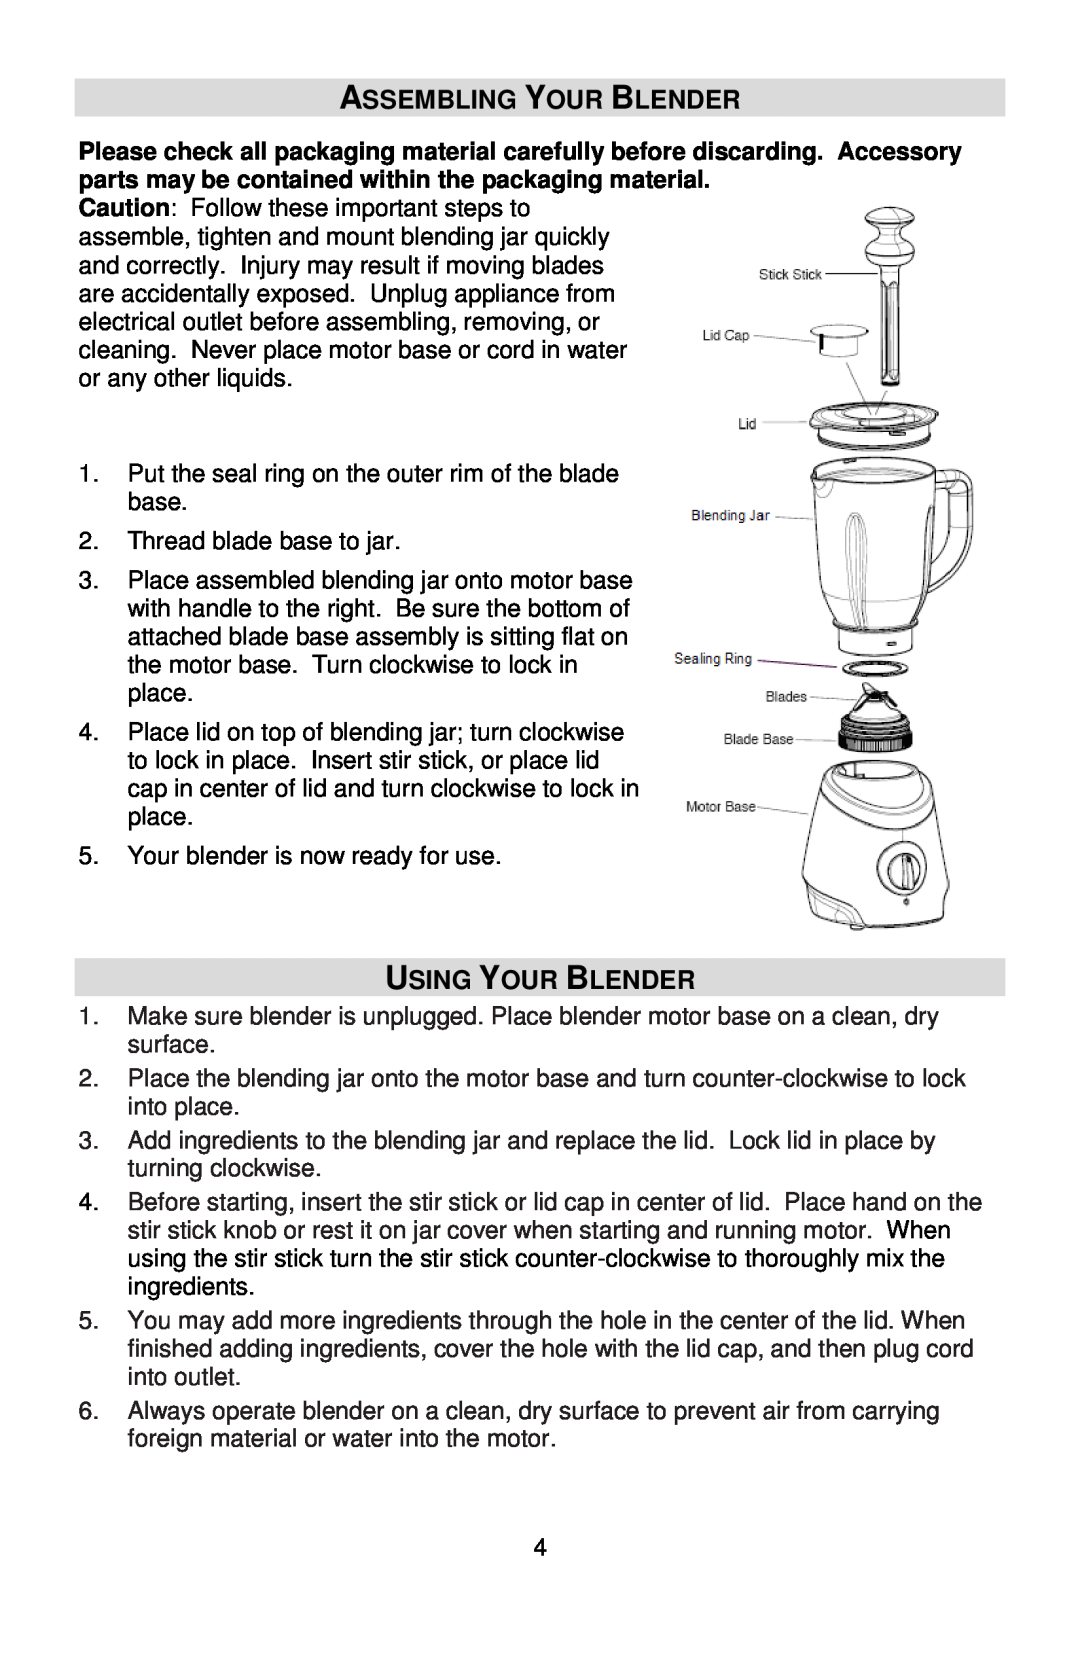 West Bend MCD 289 instruction manual Assembling Your Blender, Using Your Blender 